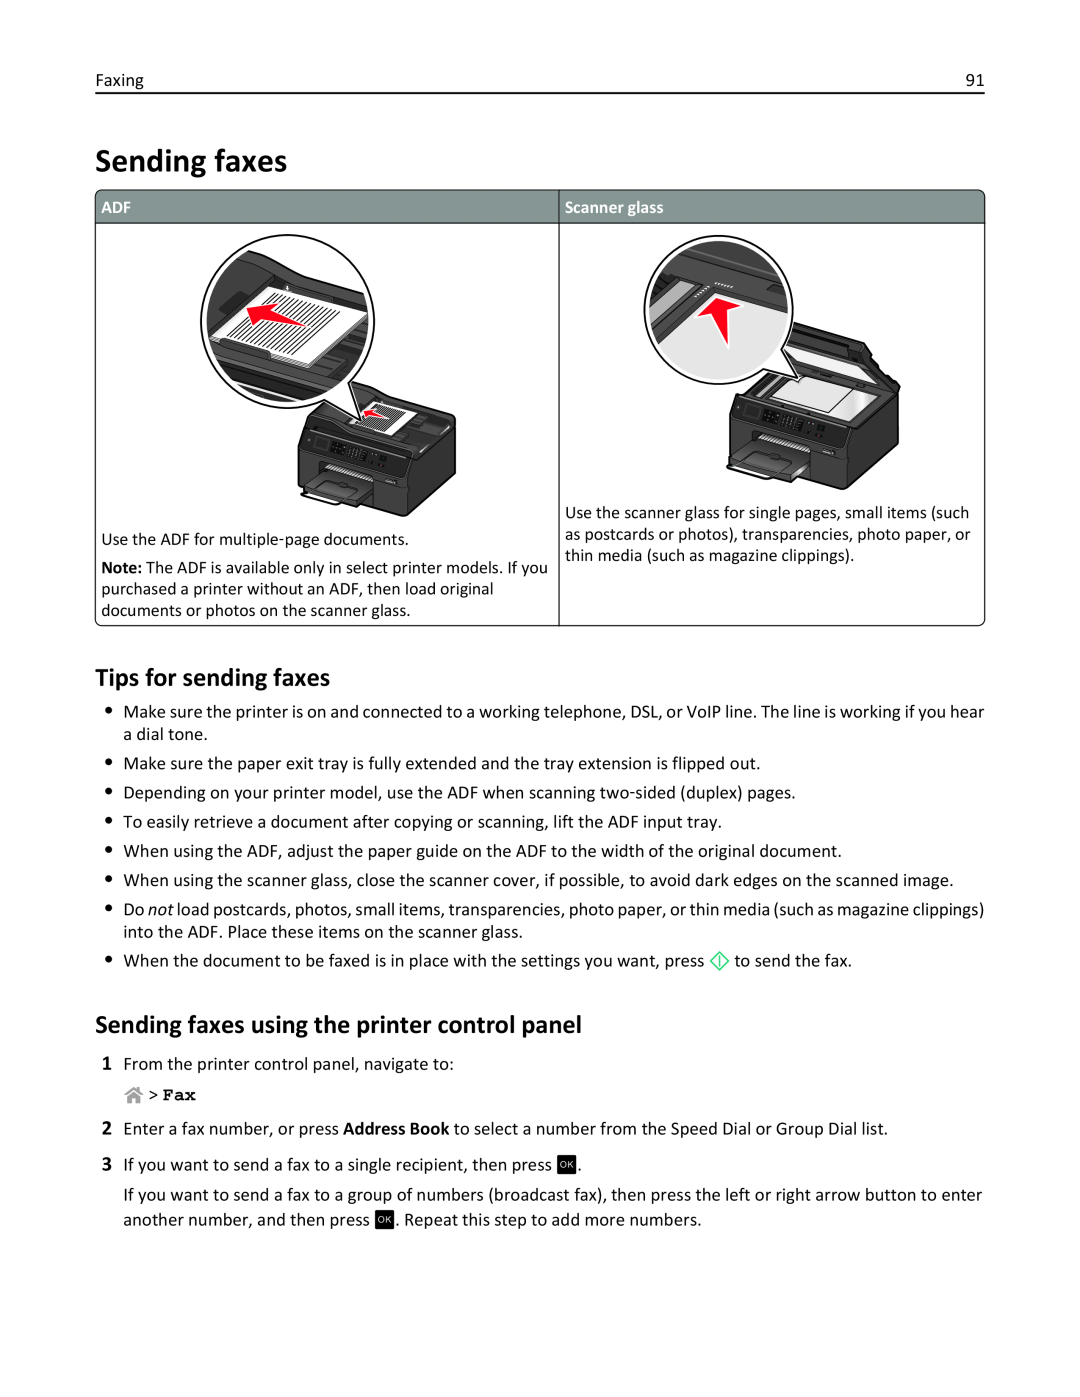 Lexmark PRO4000C, 90P3000 manual Tips for sending faxes, Sending faxes using the printer control panel 